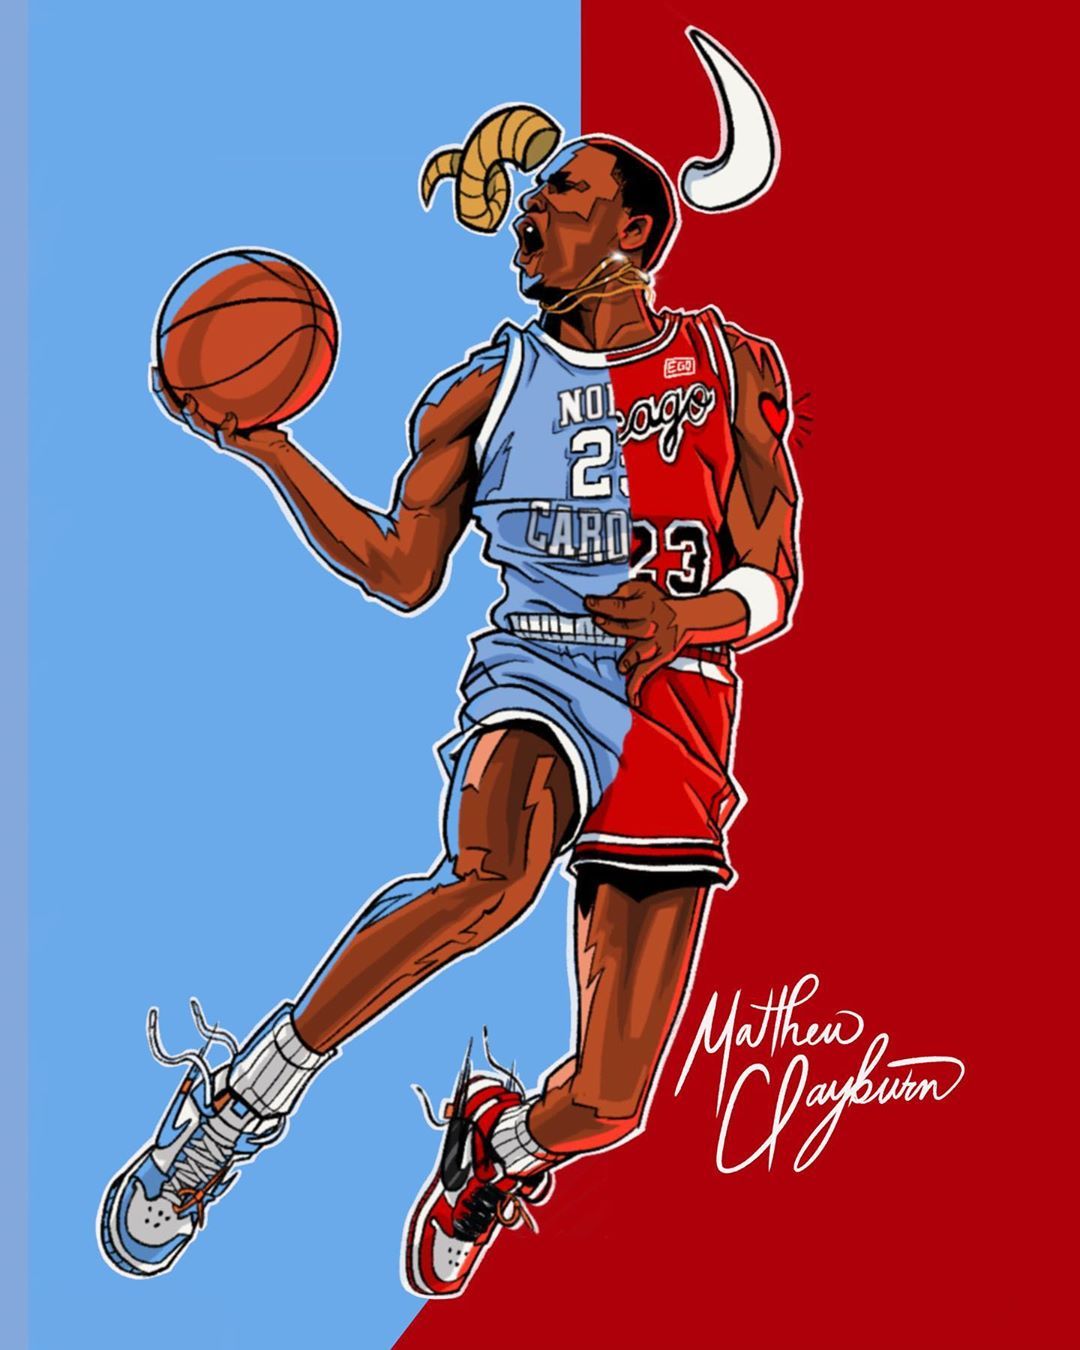 Best Irving wallpaper ideas. nba basketball art, basketball art, nba picture